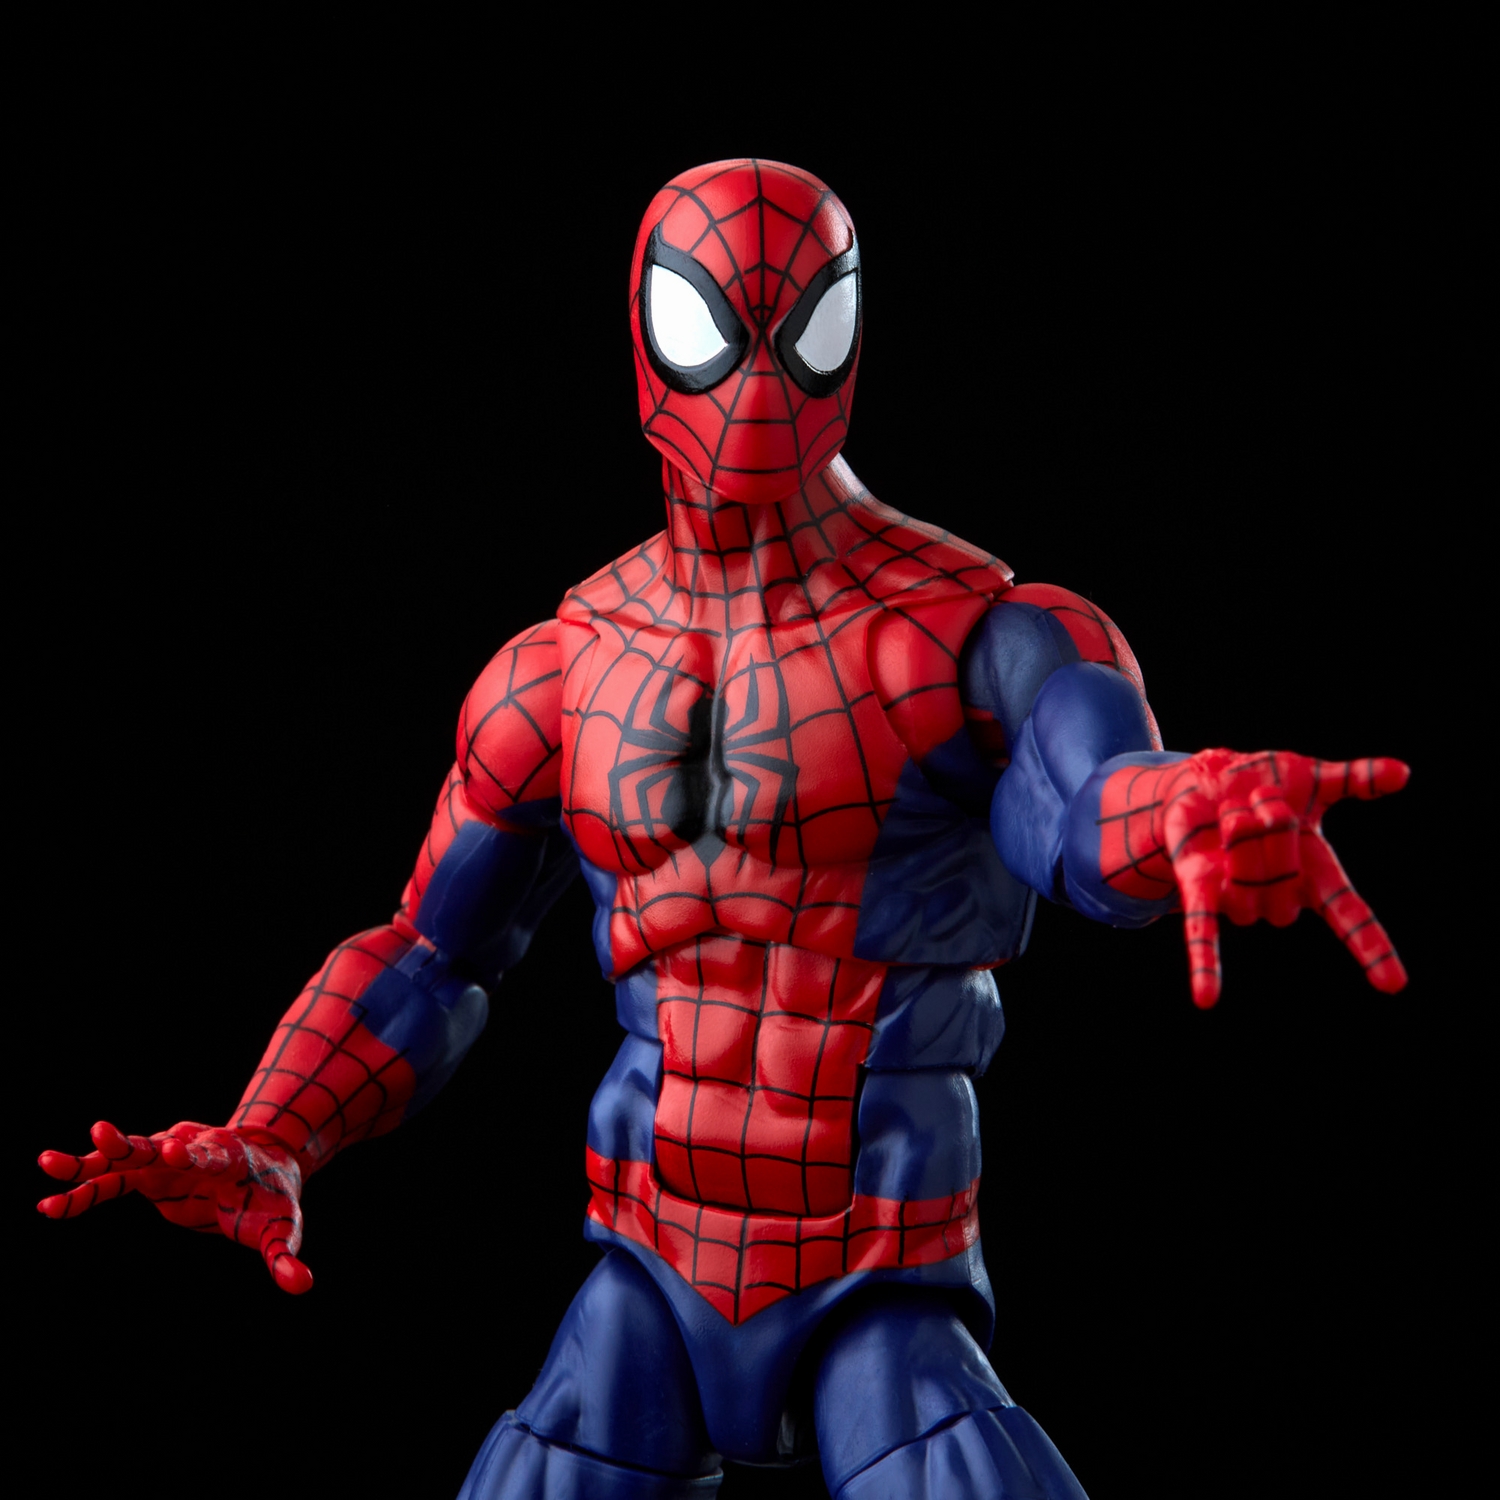 Marvel Legends Series Spider-Man and Marvel’s Spinneret - Image 6.jpg